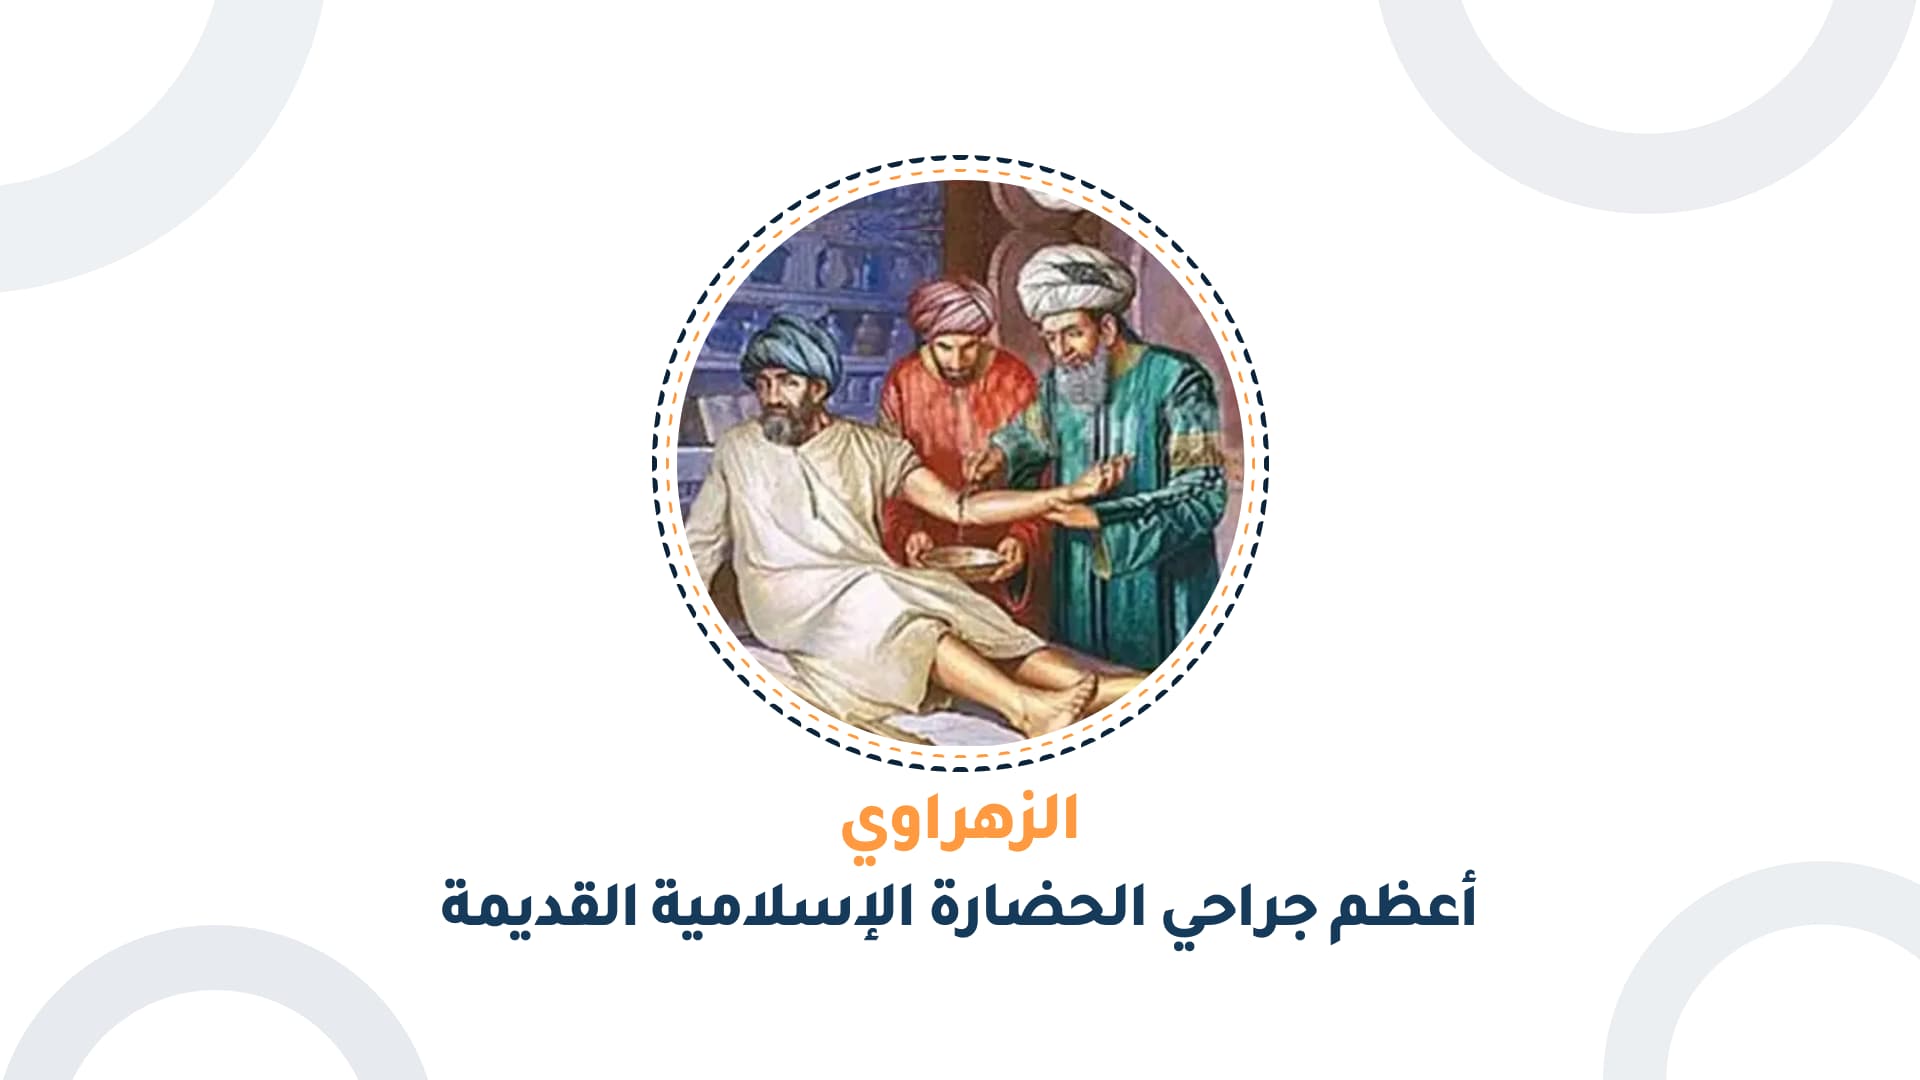 الزهراوي، أعظم جراحي الحضارة الإسلامية القديمة